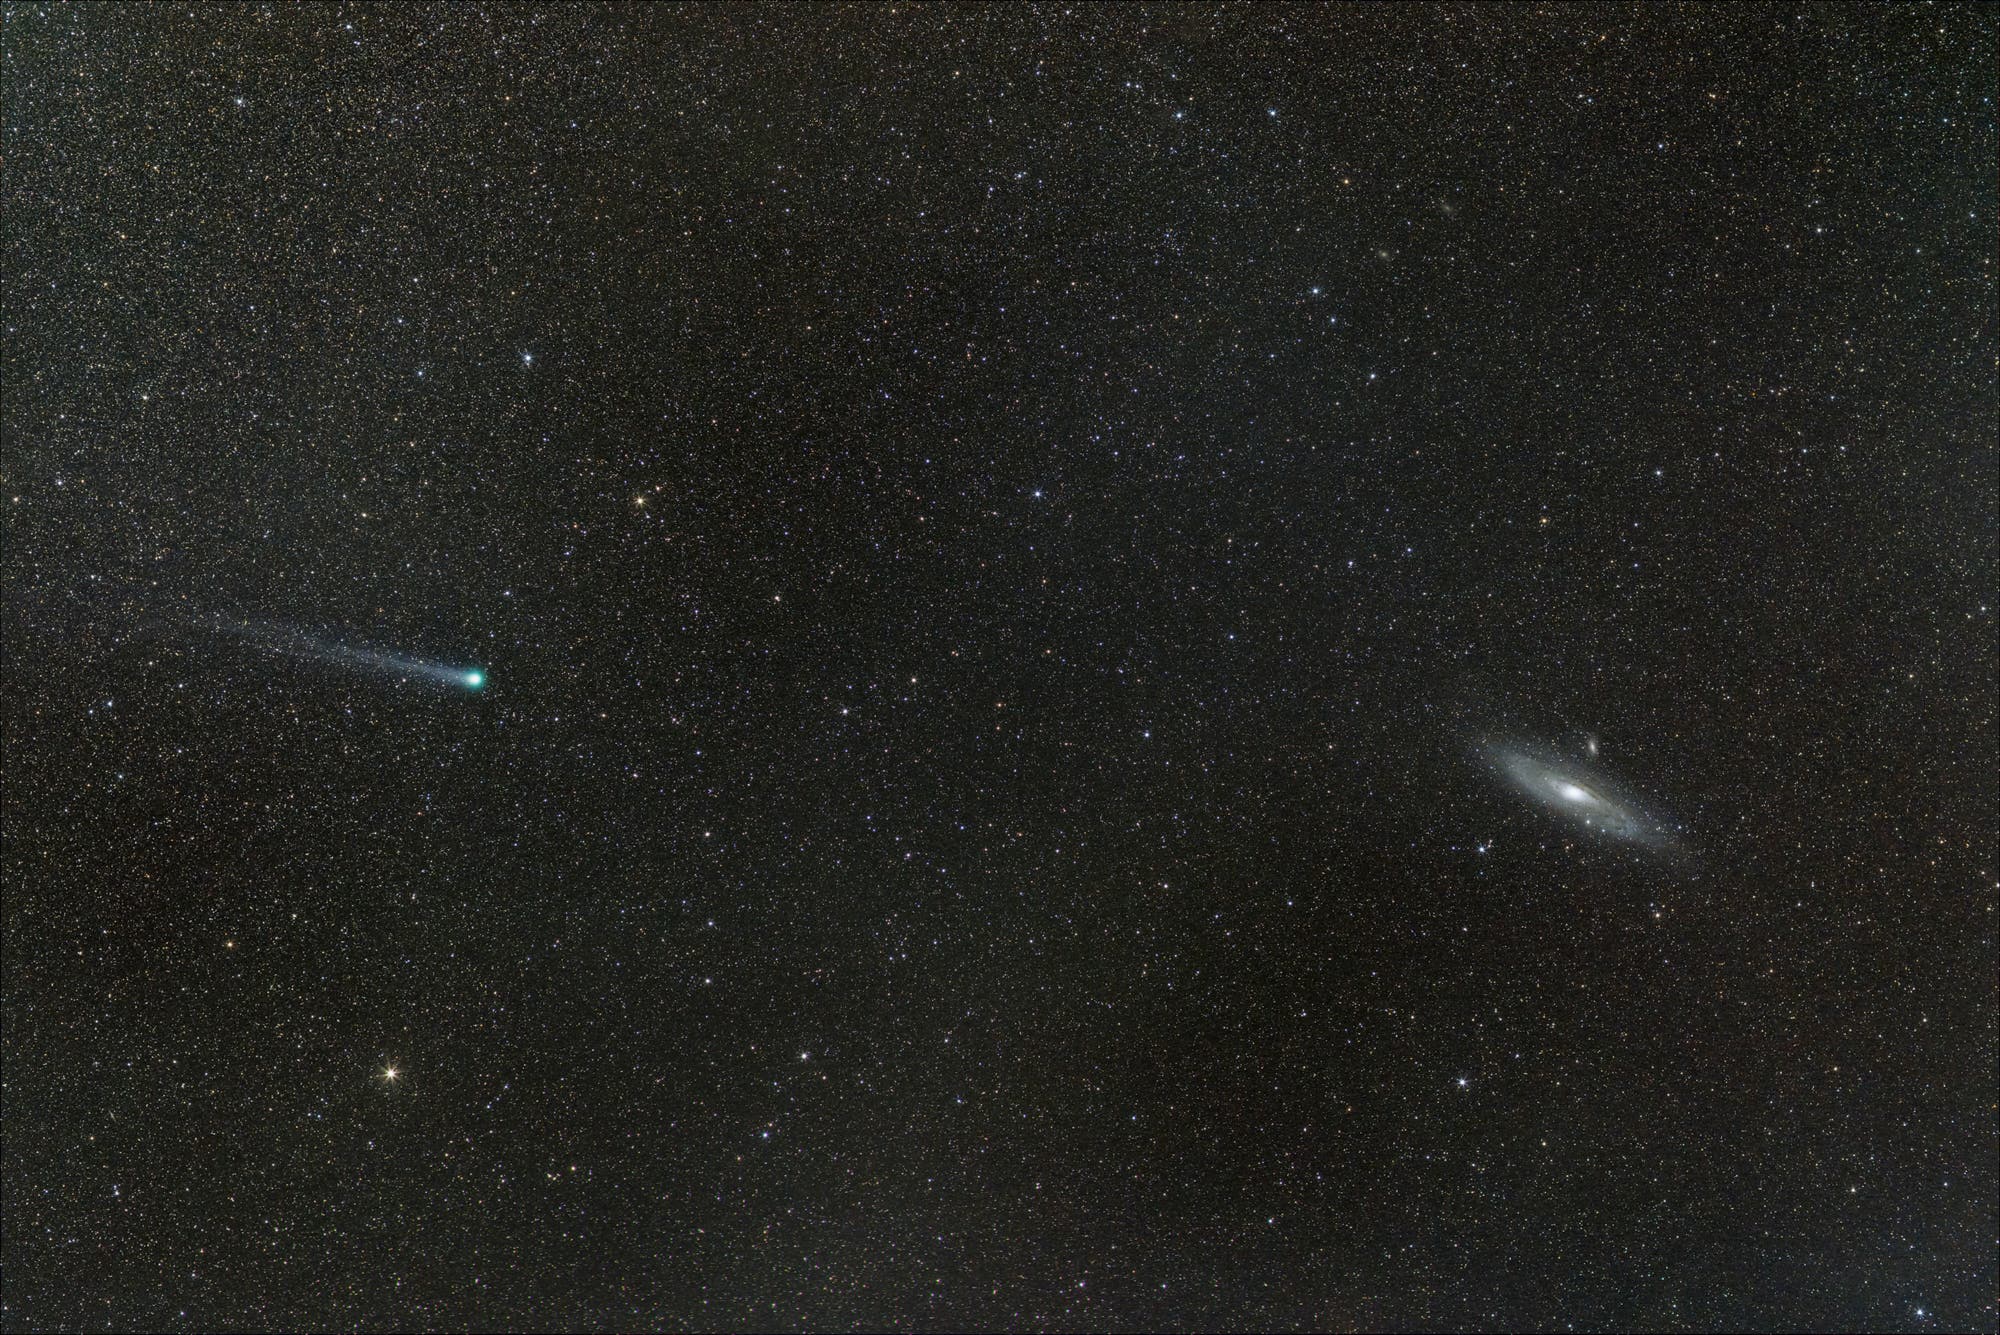 Komet meets M31